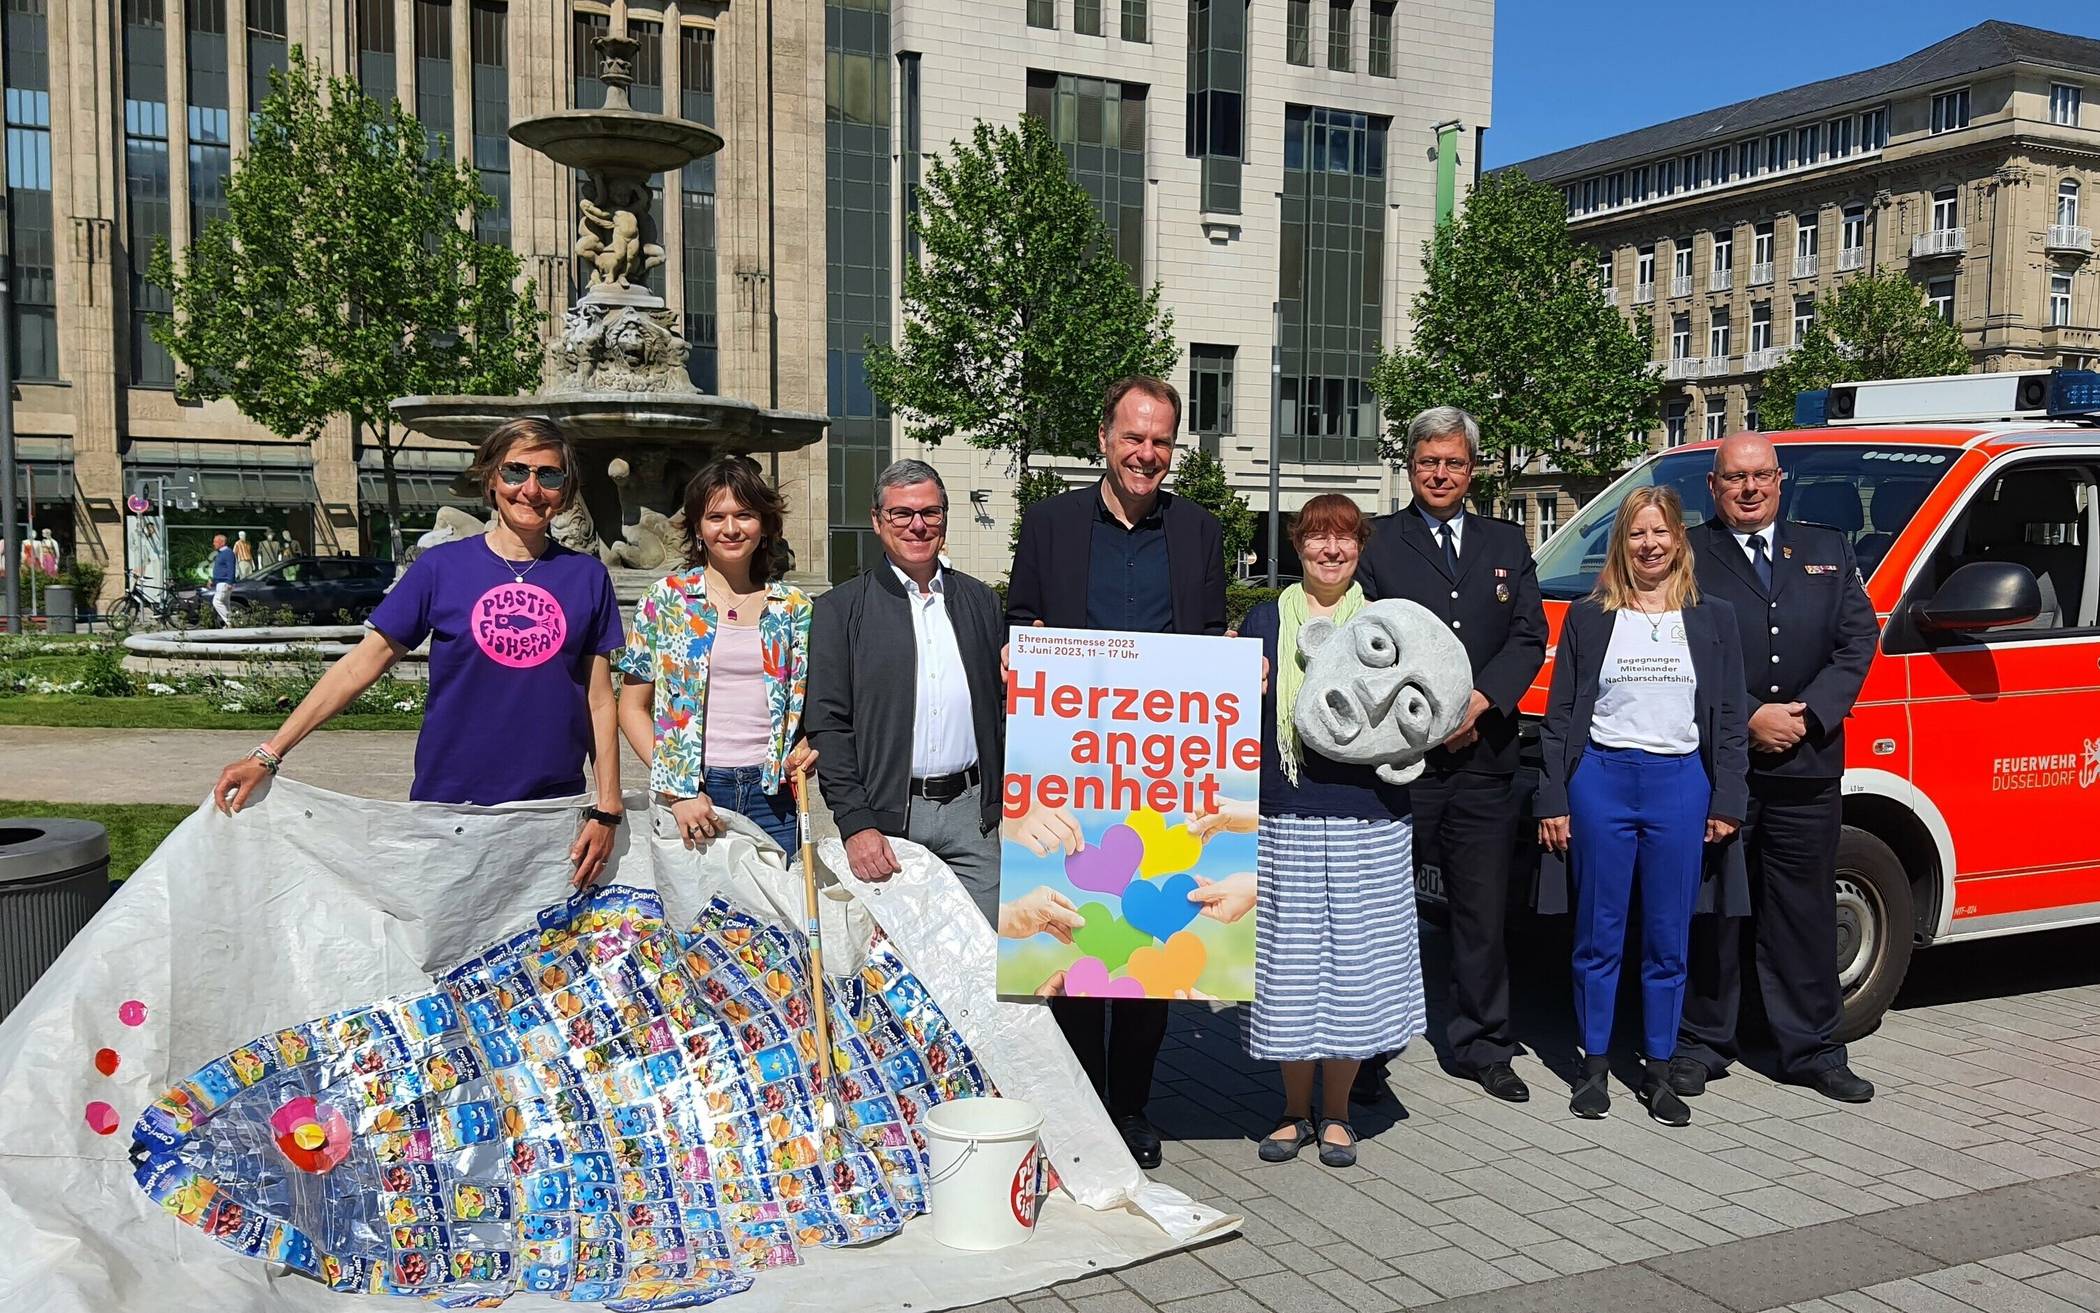 Das freiwillige Engagement als Herzensangelegenheit - am 3. Juni läuft auf dem Corneliusplatz die 4. Ehrenamtsmesse Düsseldorf.